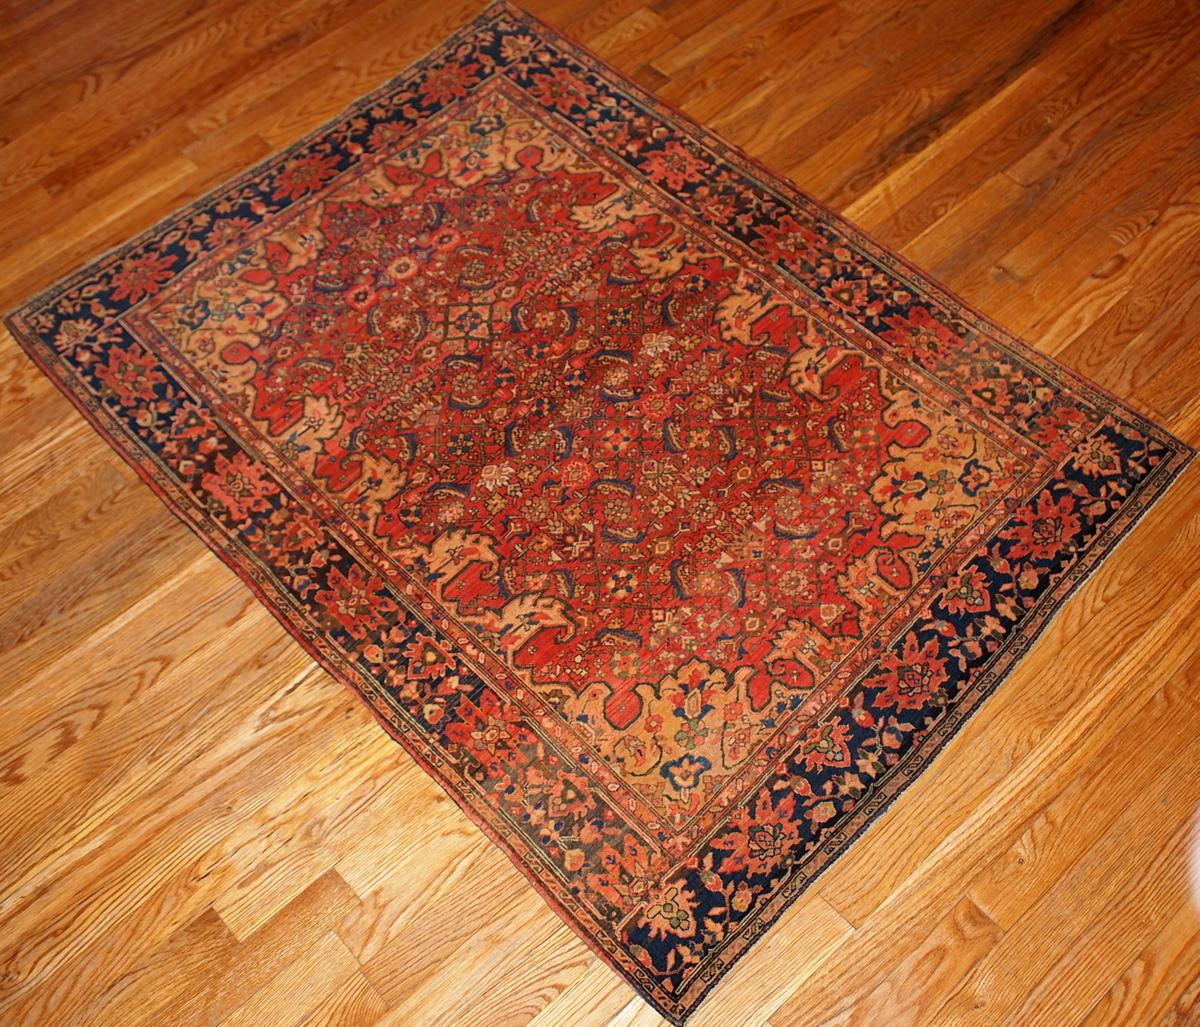 Fein gewebter persischer Sarouk-Farahan-Teppich in ungewöhnlichen Farben und Mustern. Der Teppich ist in original gutem Zustand, enthält helle Farbtöne.
 